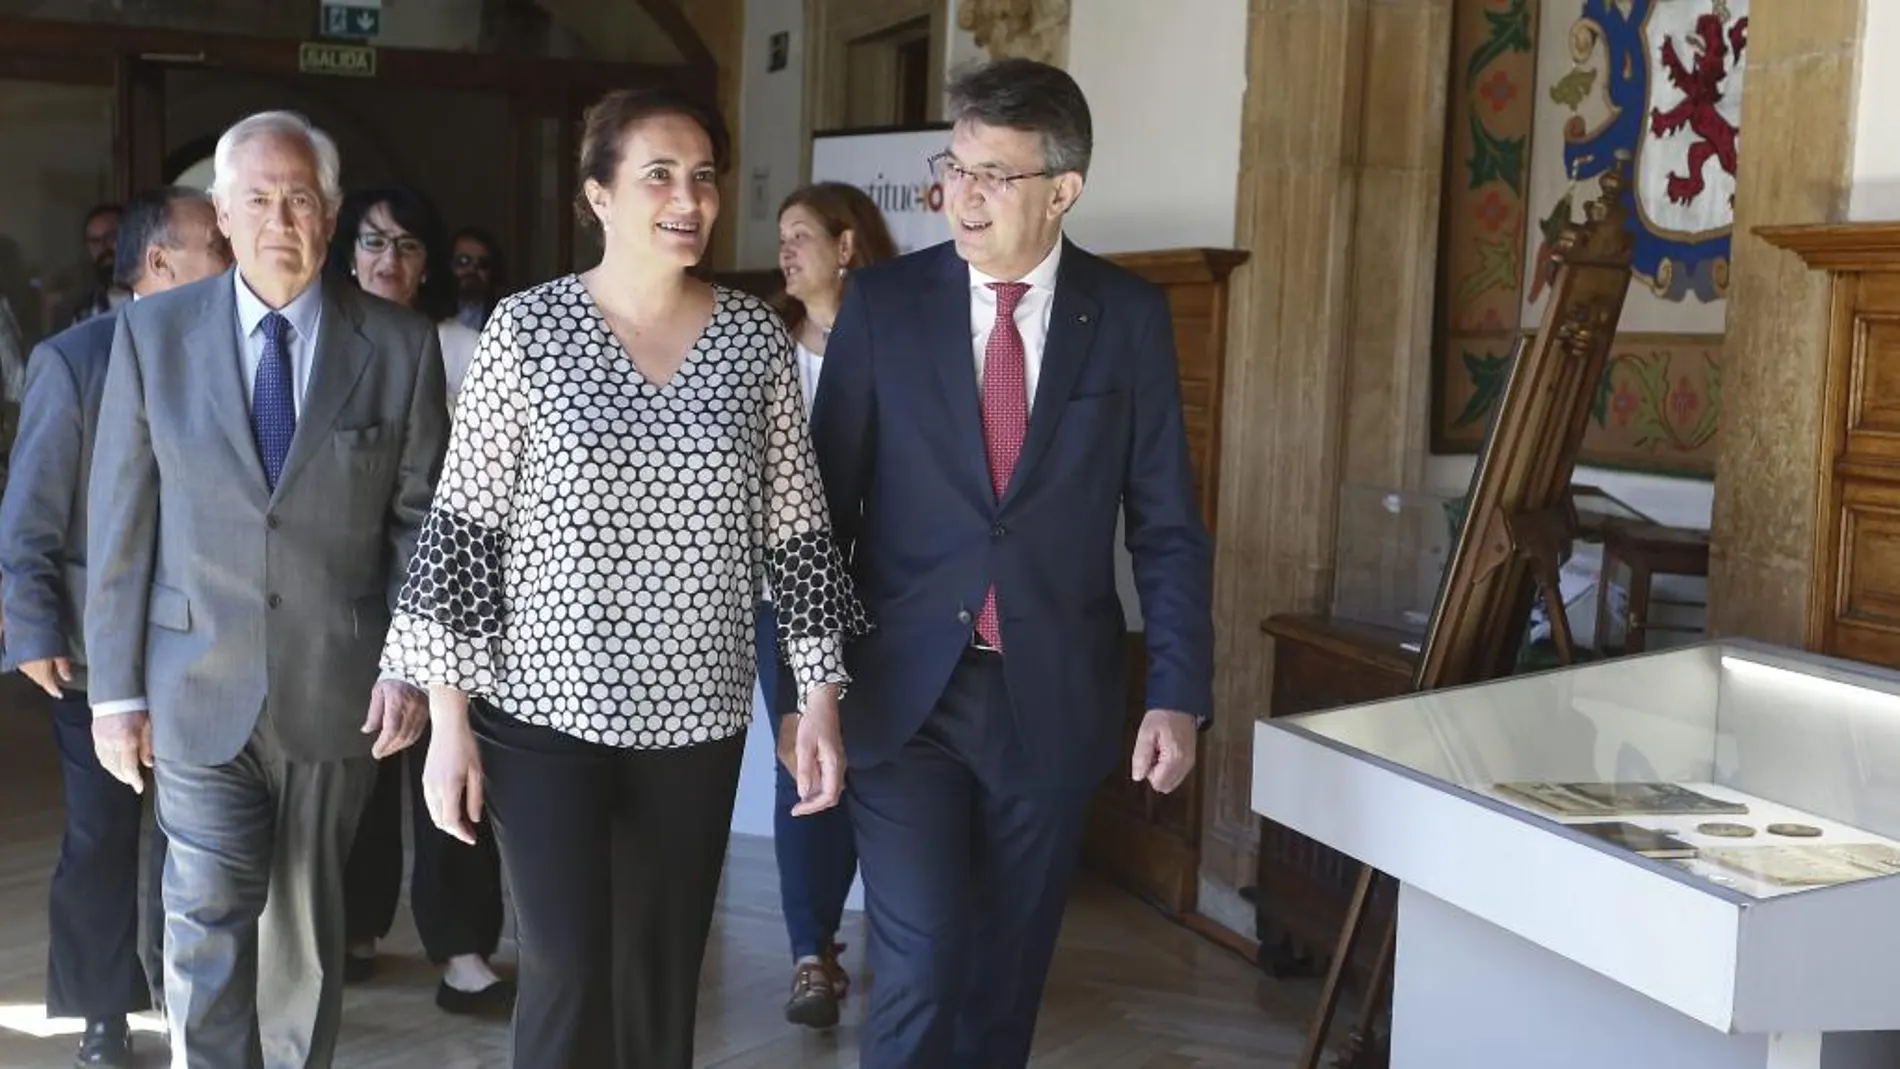 La consejera María Josefa García Cirac llega a la firma del protocolo de actuación junto al presidente de la Diputación de León, Juan Martínez Majo